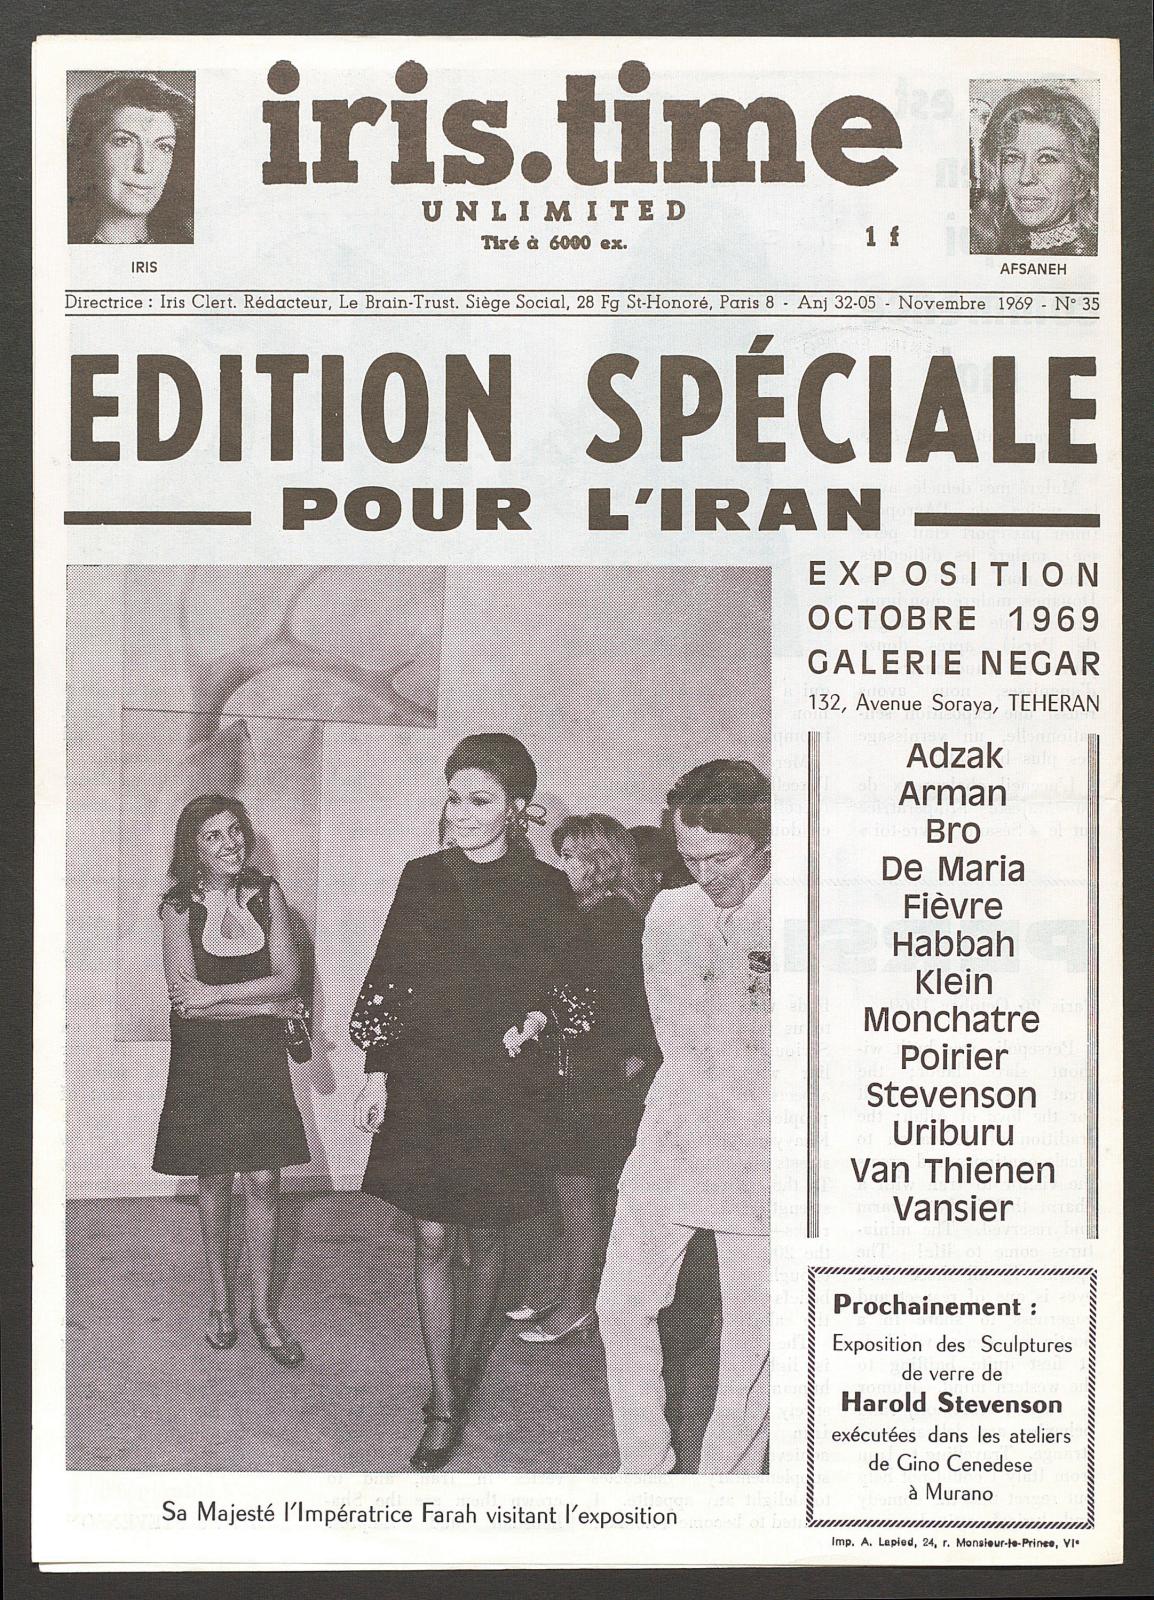 Quatrième de couverture du 35e numéro d’Iris.time unlimited, novembre 1969, publié à l’occasion du séjour d’Iris Clert en Iran.